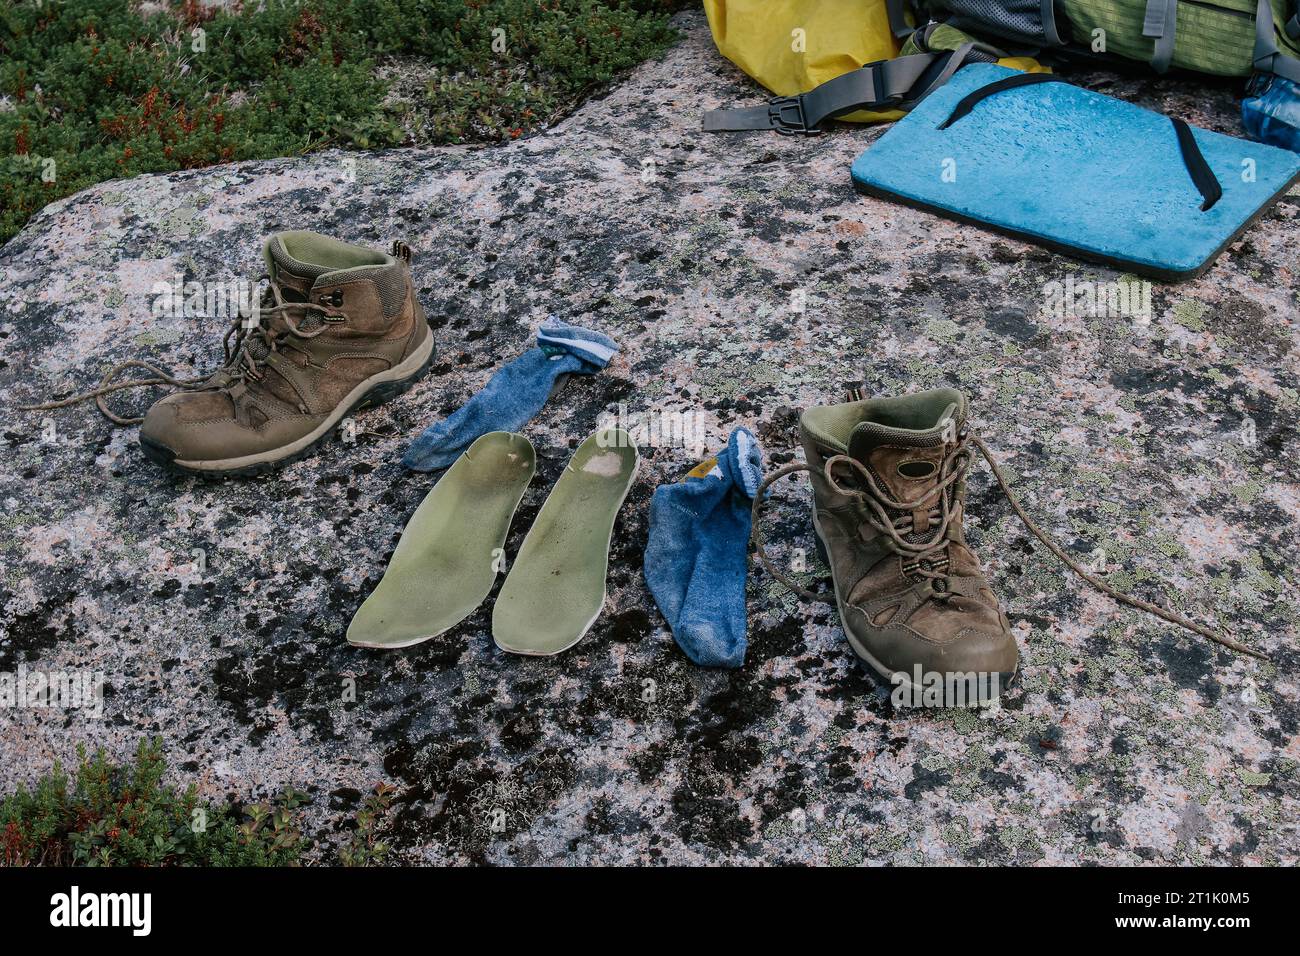 Vieilles bottes de trekking brunes, semelles vertes et chaussettes bleues à sécher après une journée de randonnée, disposées sur pierre. Pieds mouillés en voyage. Camping de voyage Banque D'Images